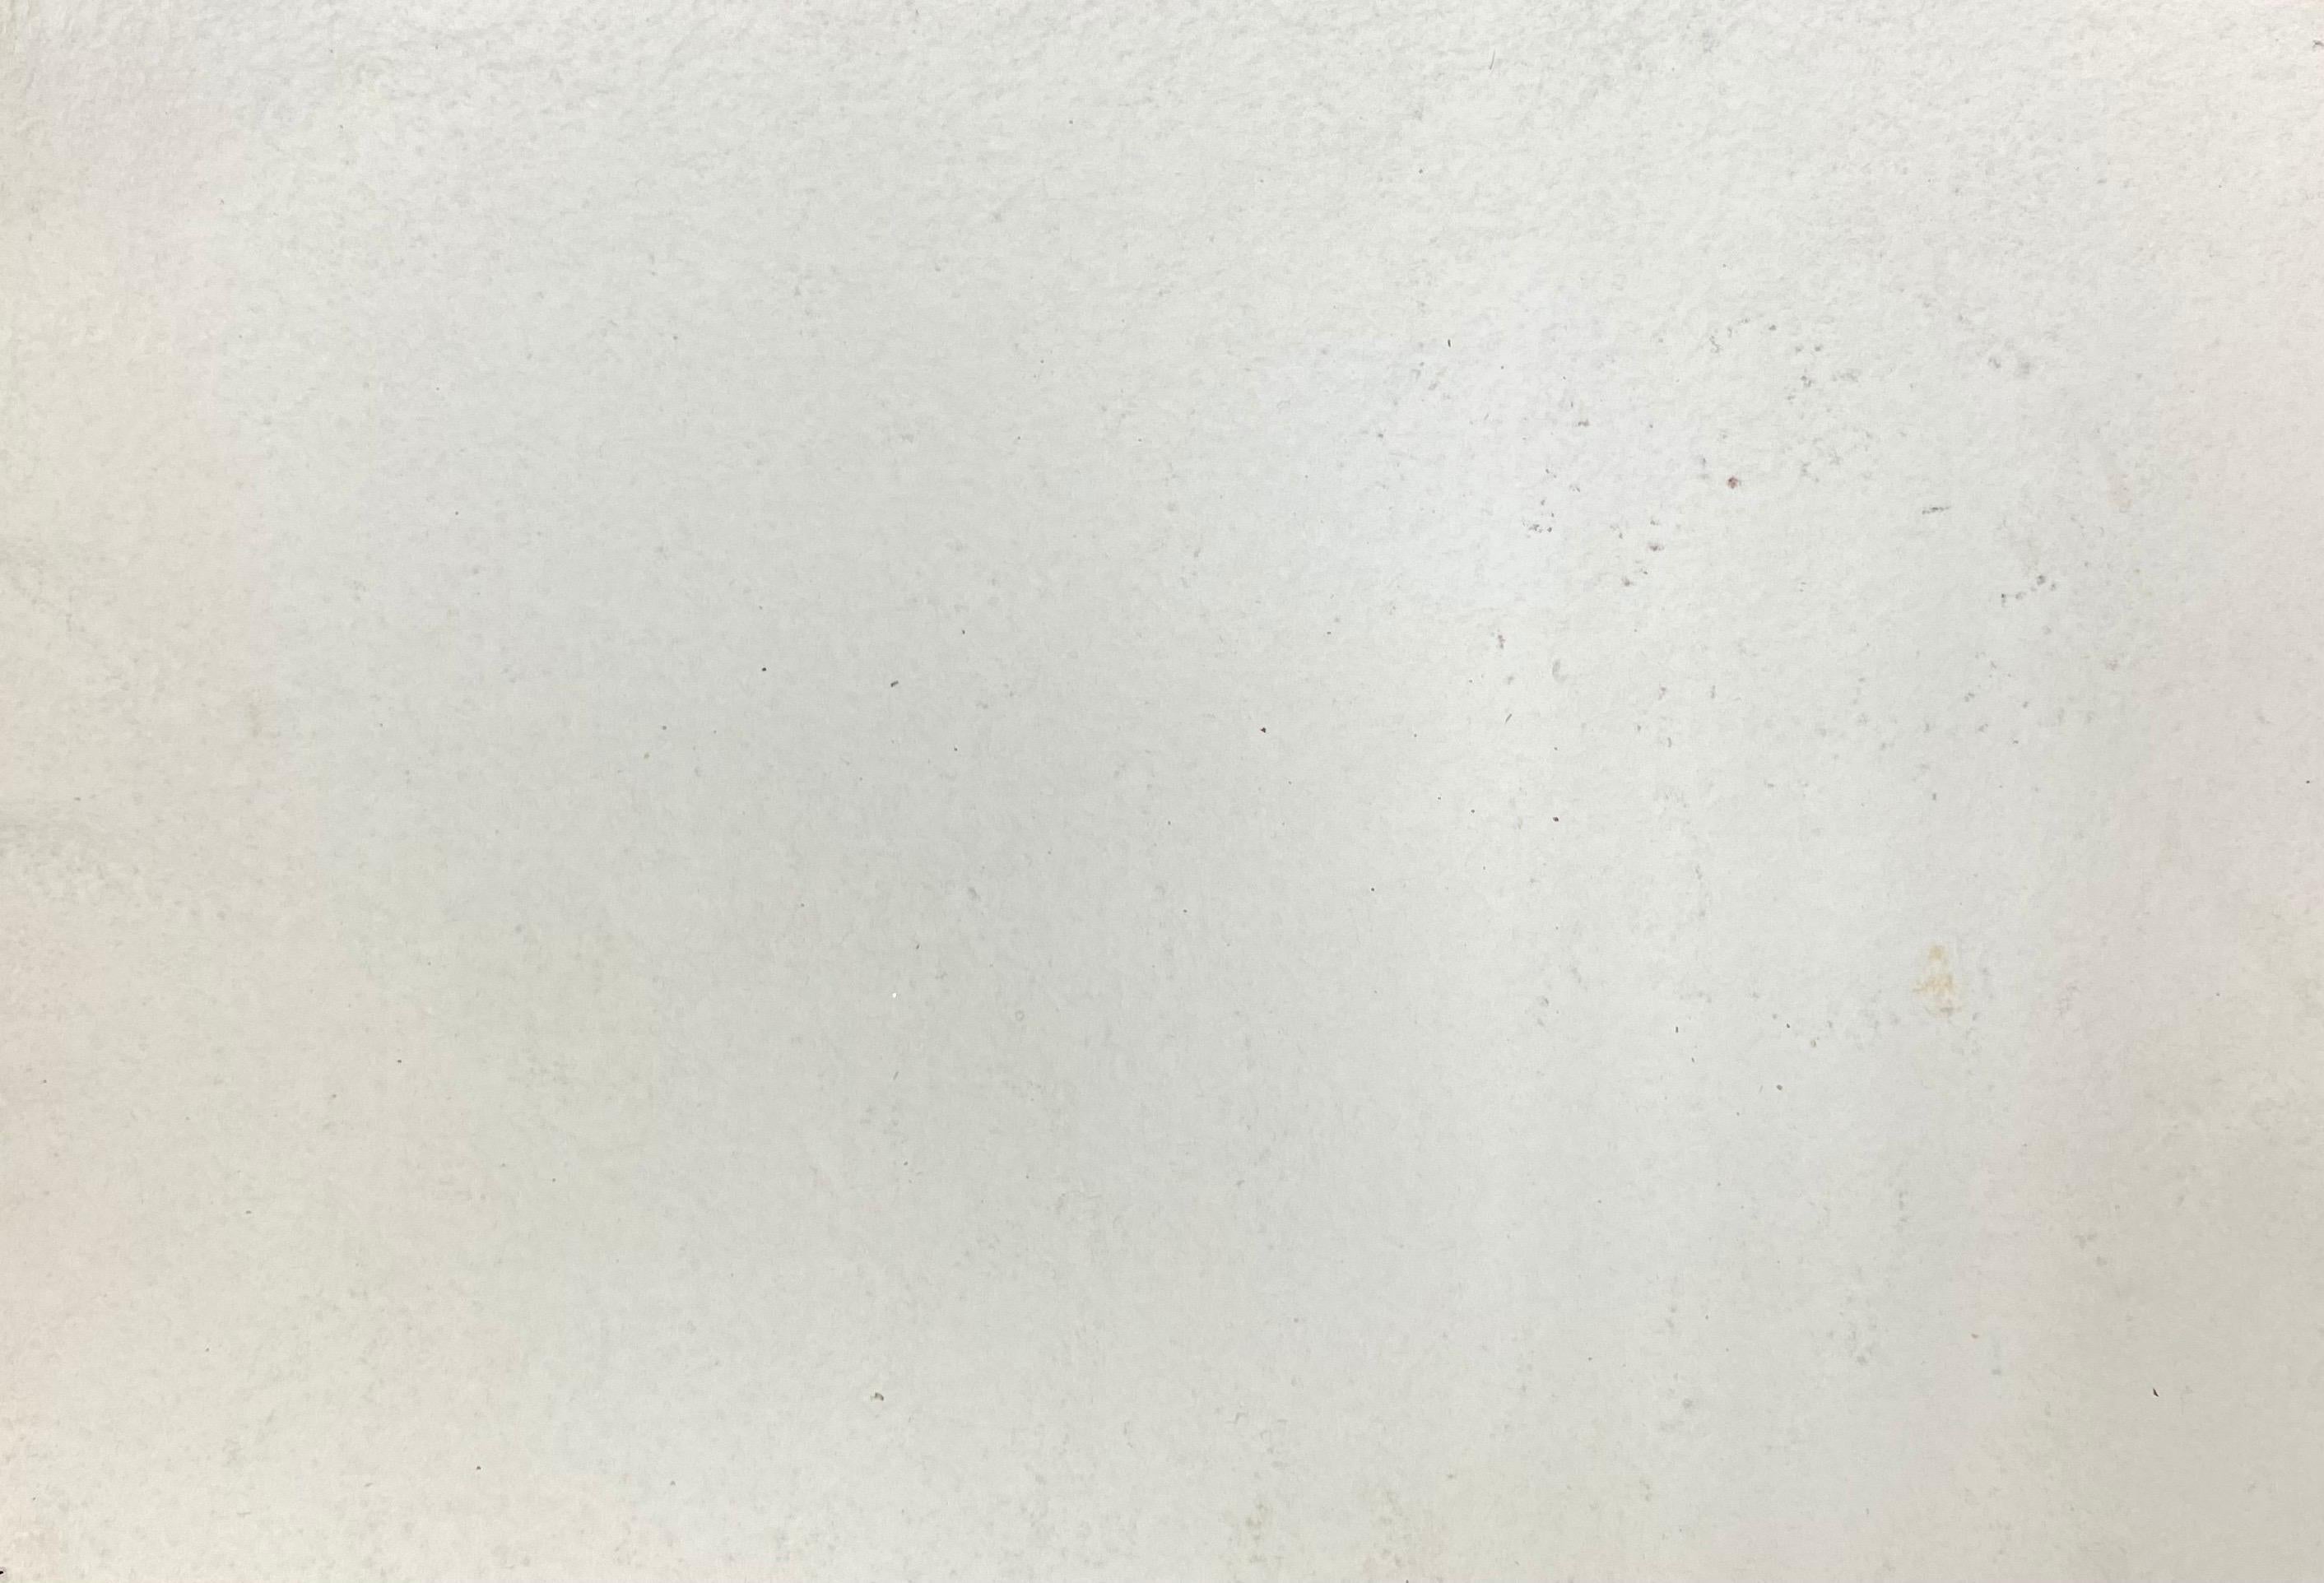 AKOS BIRO (UNGARISCH 1911-2002)
aquarell/Gouache
größe: 7,75 x 11 Zoll

Wunderschönes, farbenfrohes Originalgemälde des sehr beliebten und hoch angesehenen ungarisch-französischen Malers Akos Biro (1911-2002).

Das Gemälde hat eine tadellose